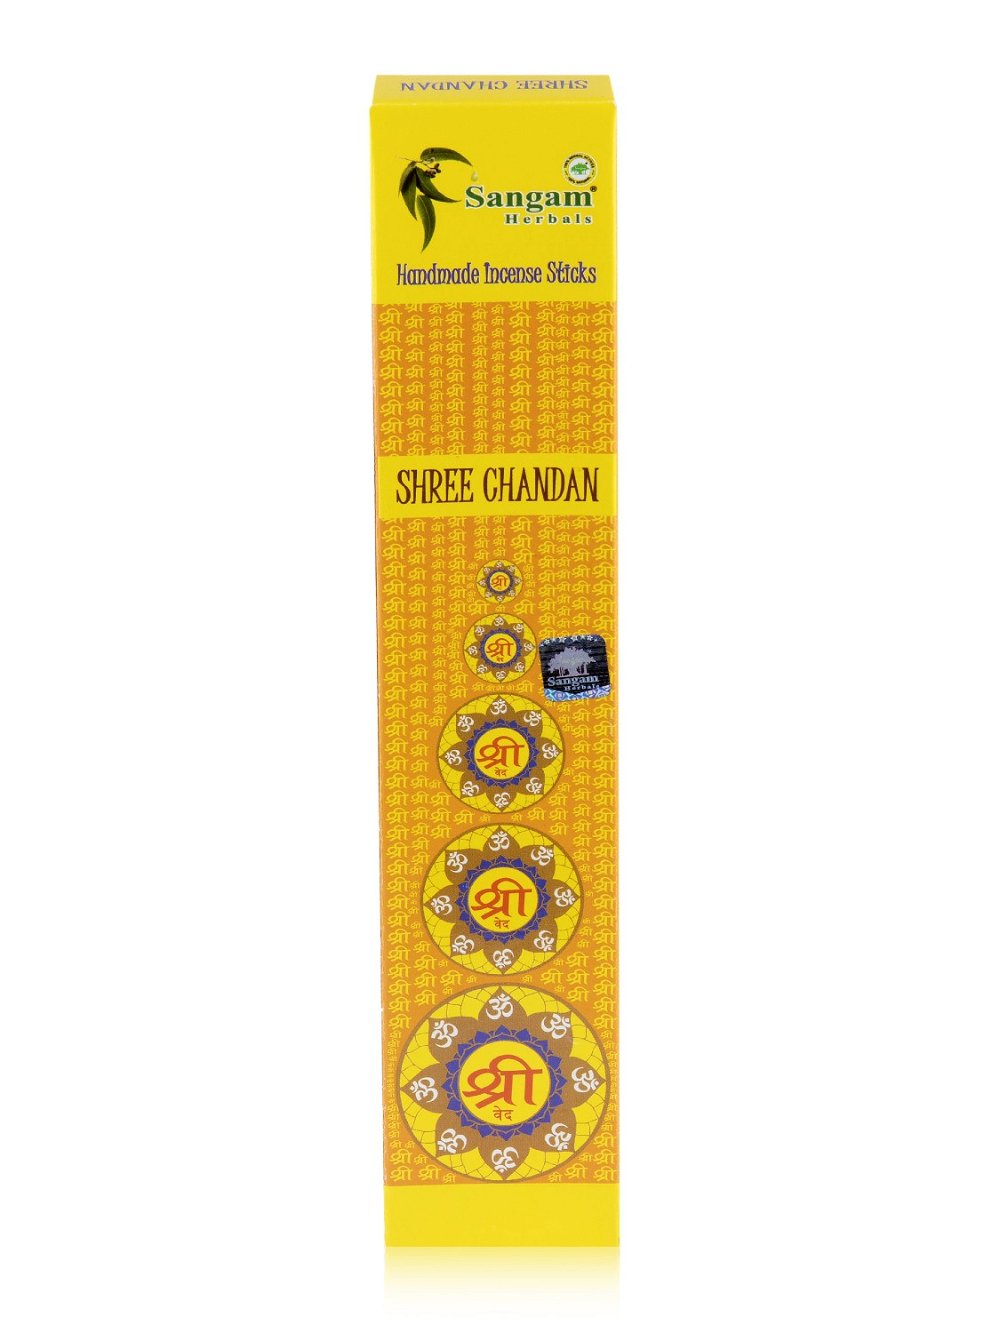 Благовоние Shree Chandan, 15 палочек по 21 см, 15, Shree Chandan, Shree Chandan